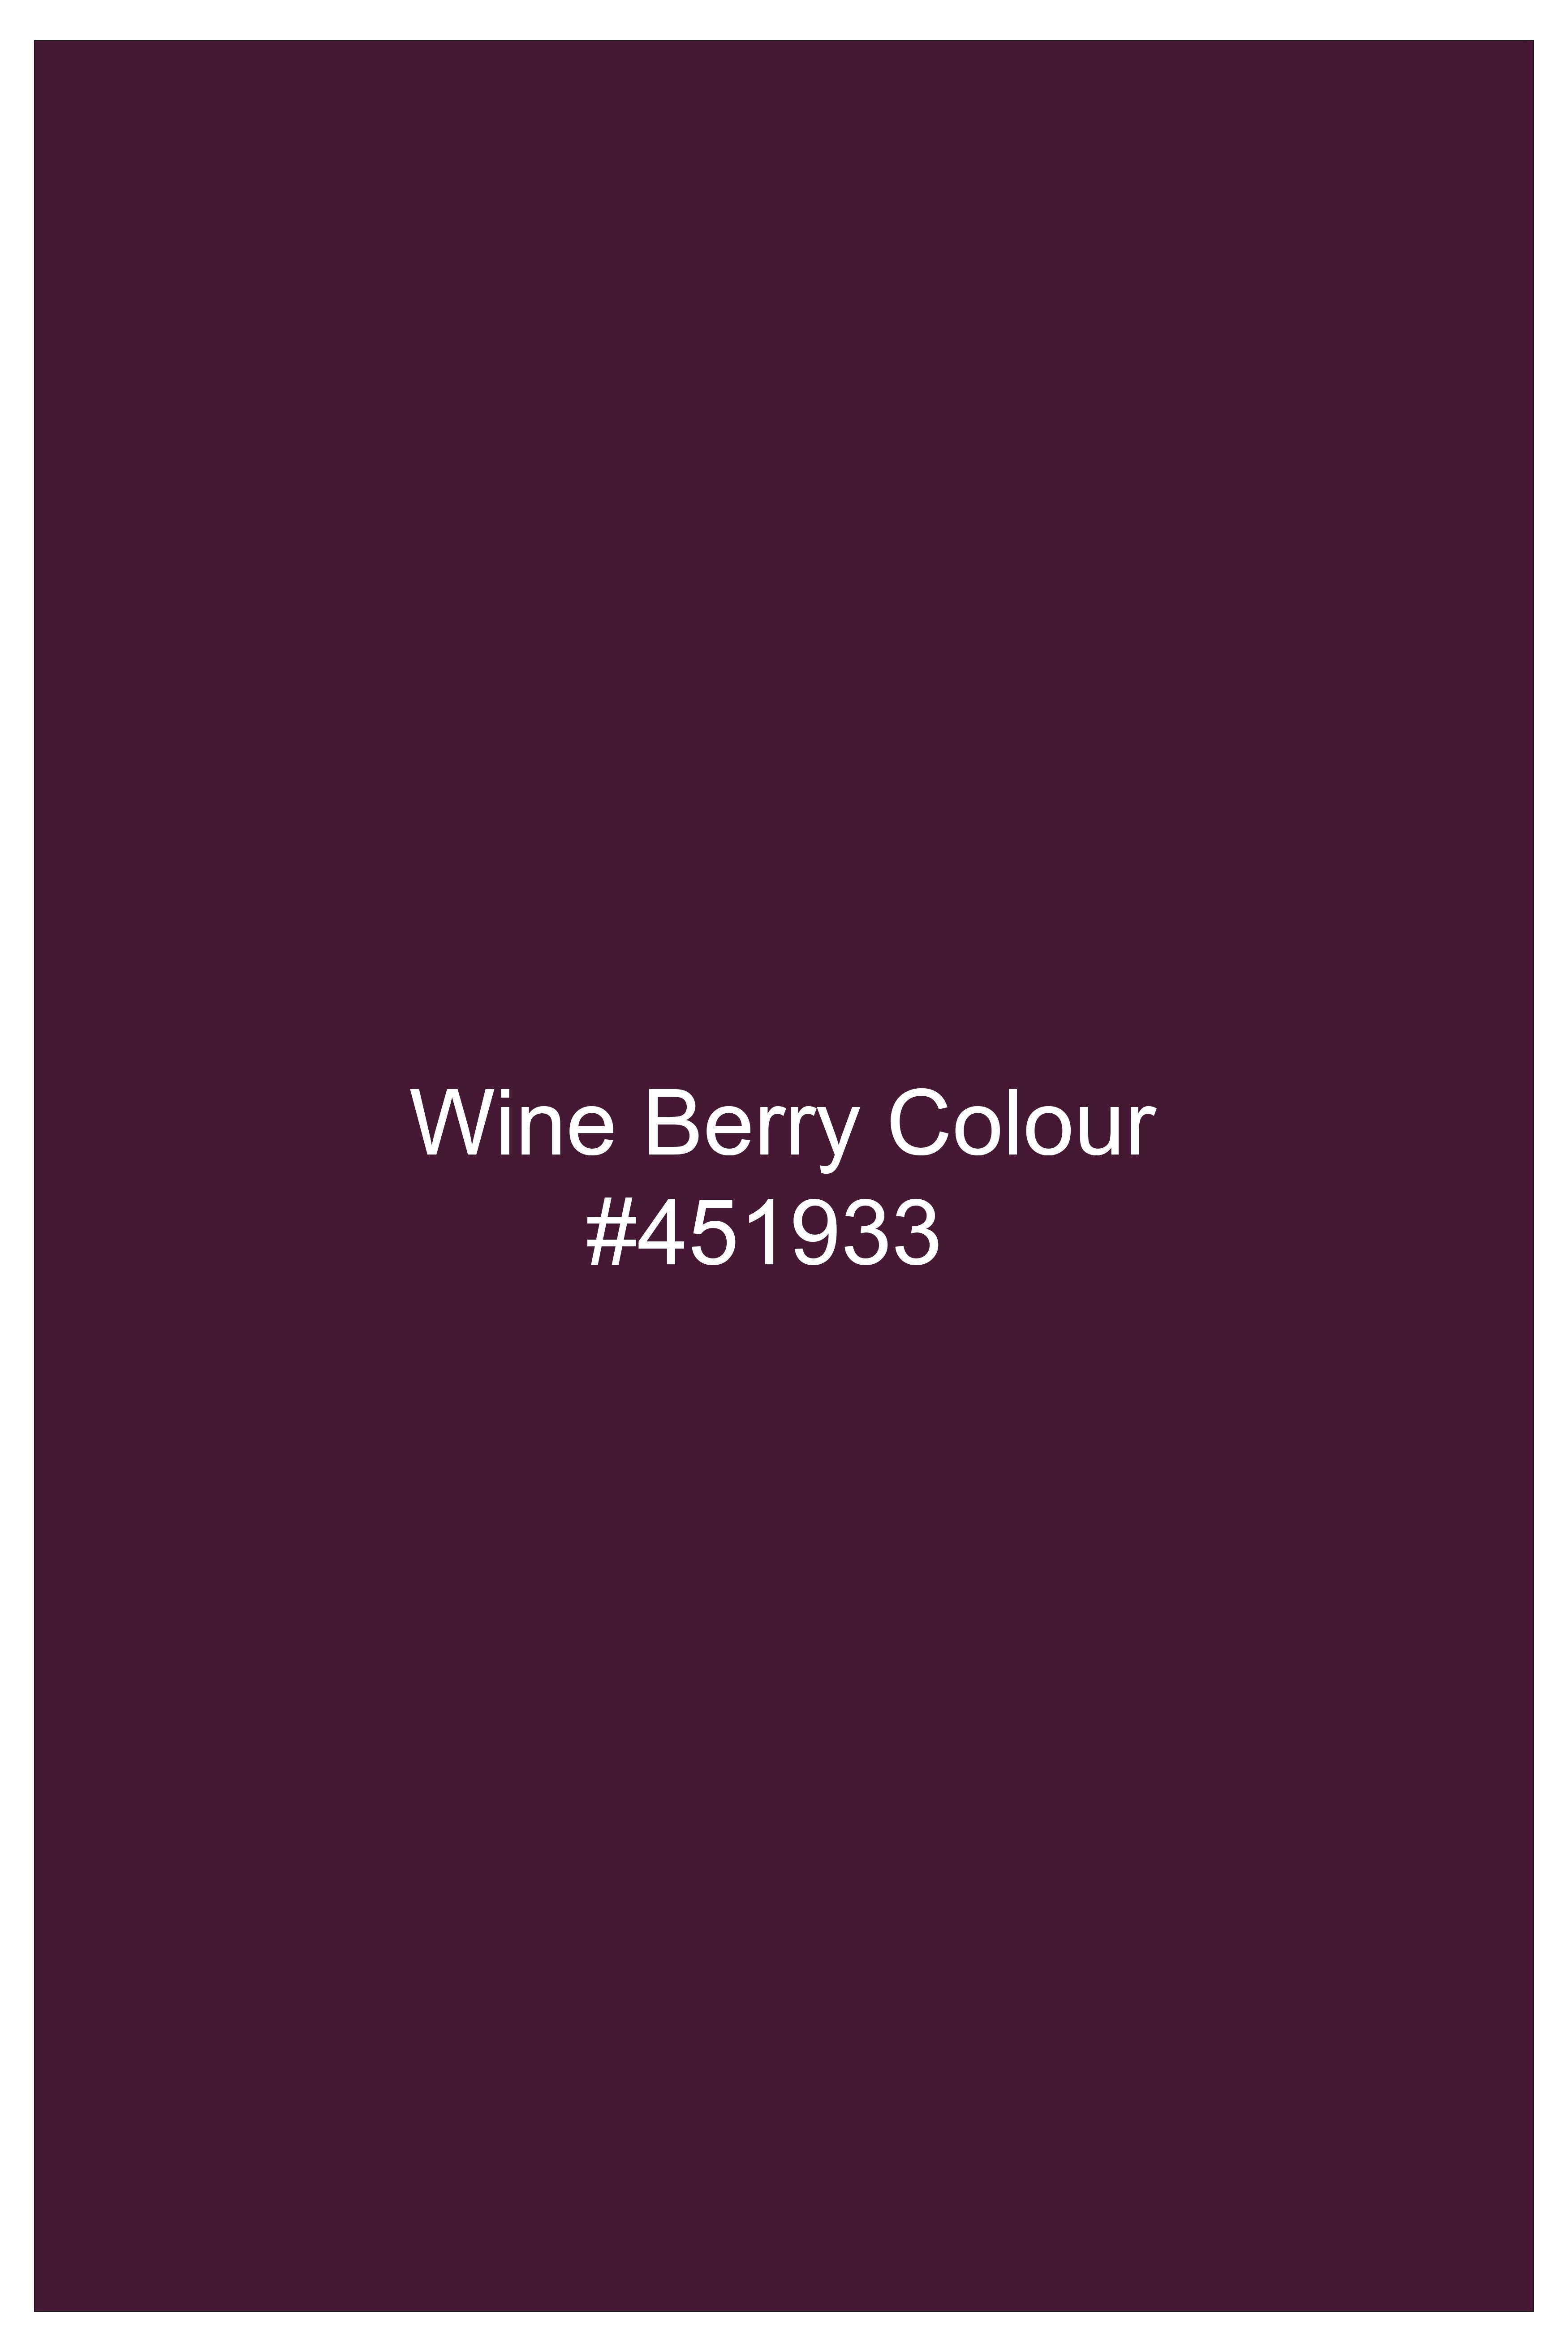 Wine Berry Checkered Premium Cotton Shirt